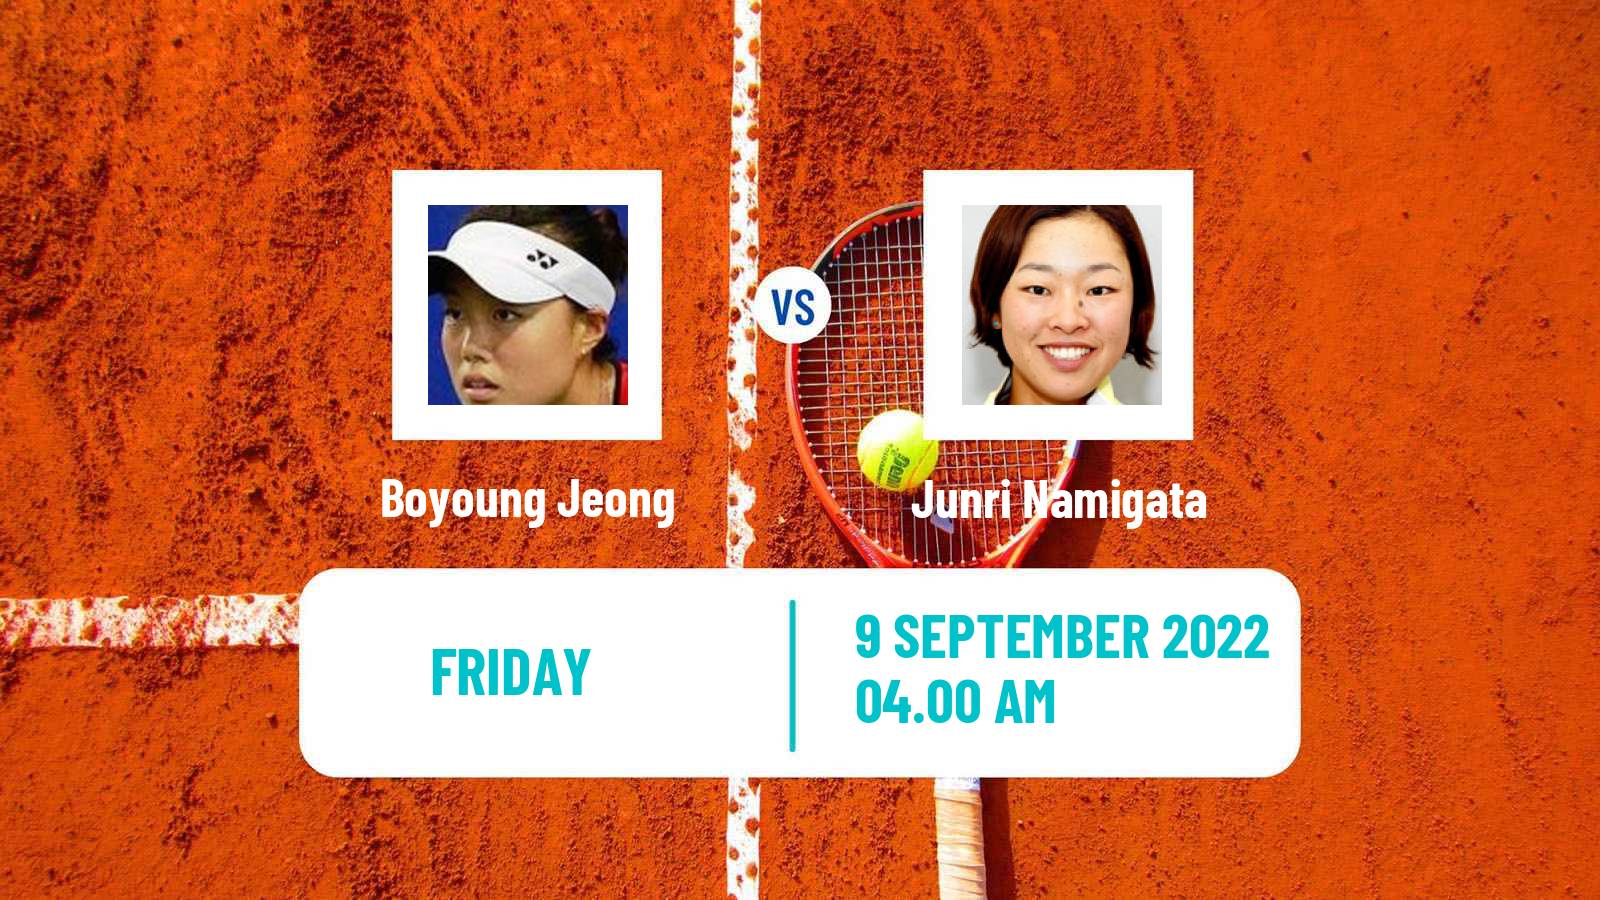 Tennis ITF Tournaments Boyoung Jeong - Junri Namigata